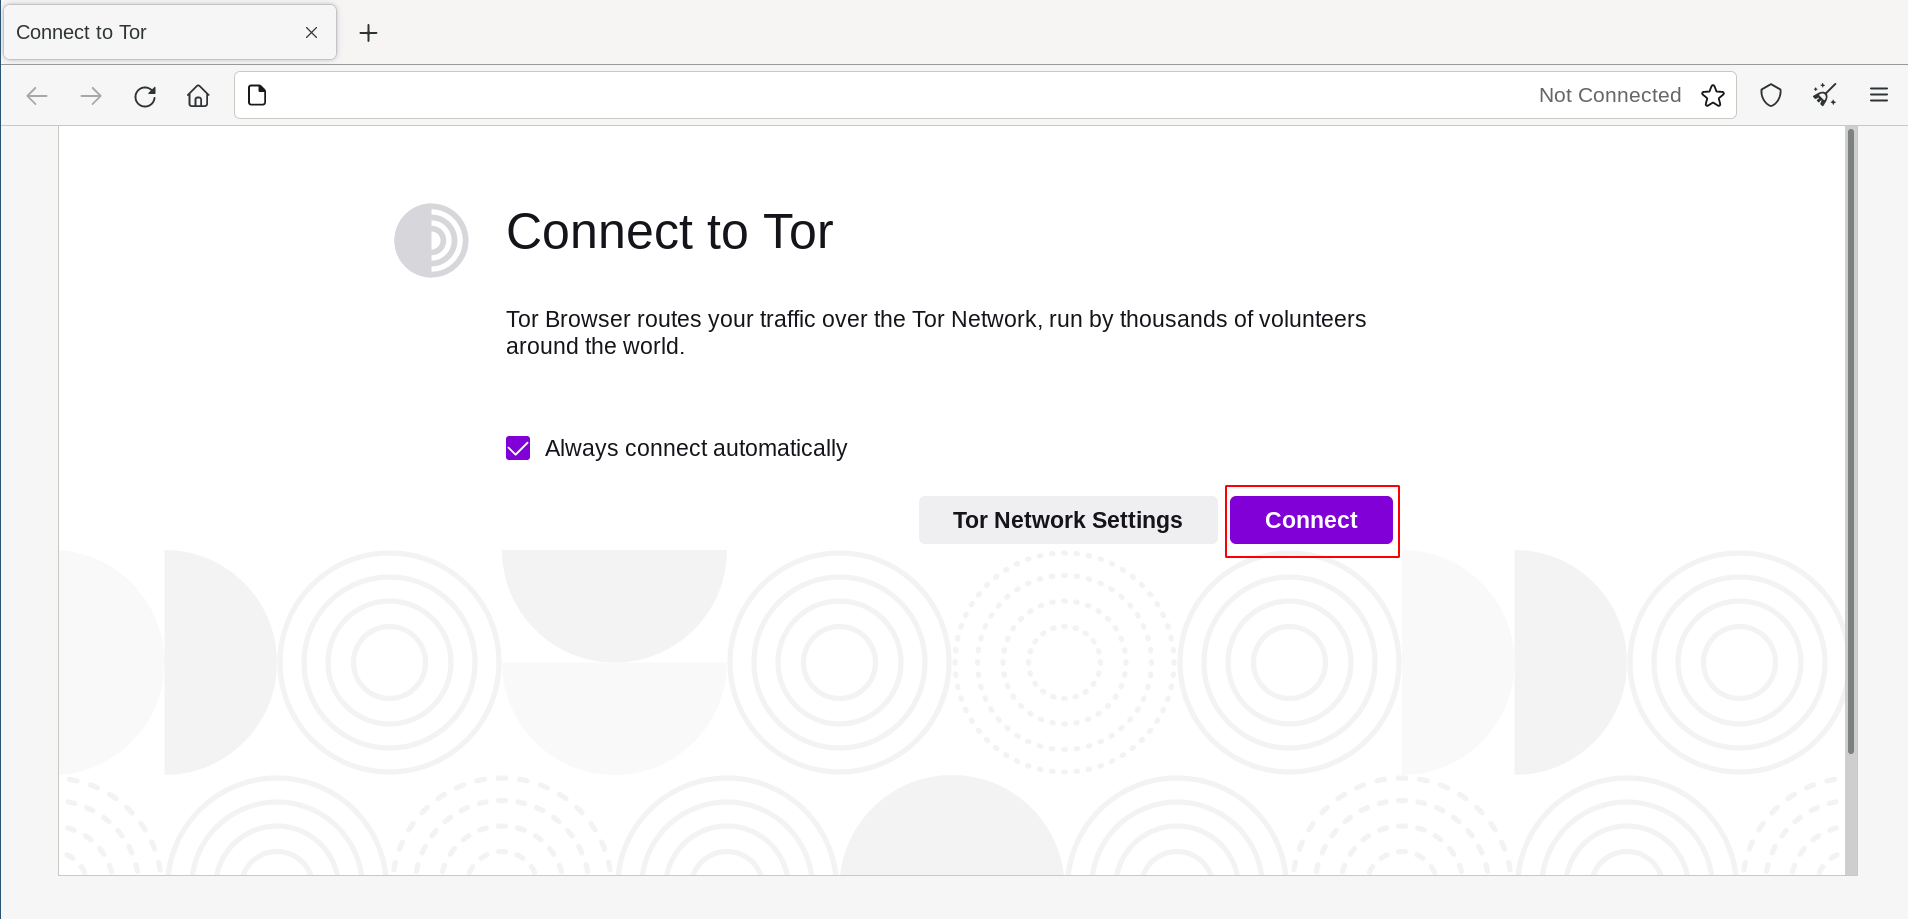 הקליקו 'Connect' כדי להתחבר ל Tor.